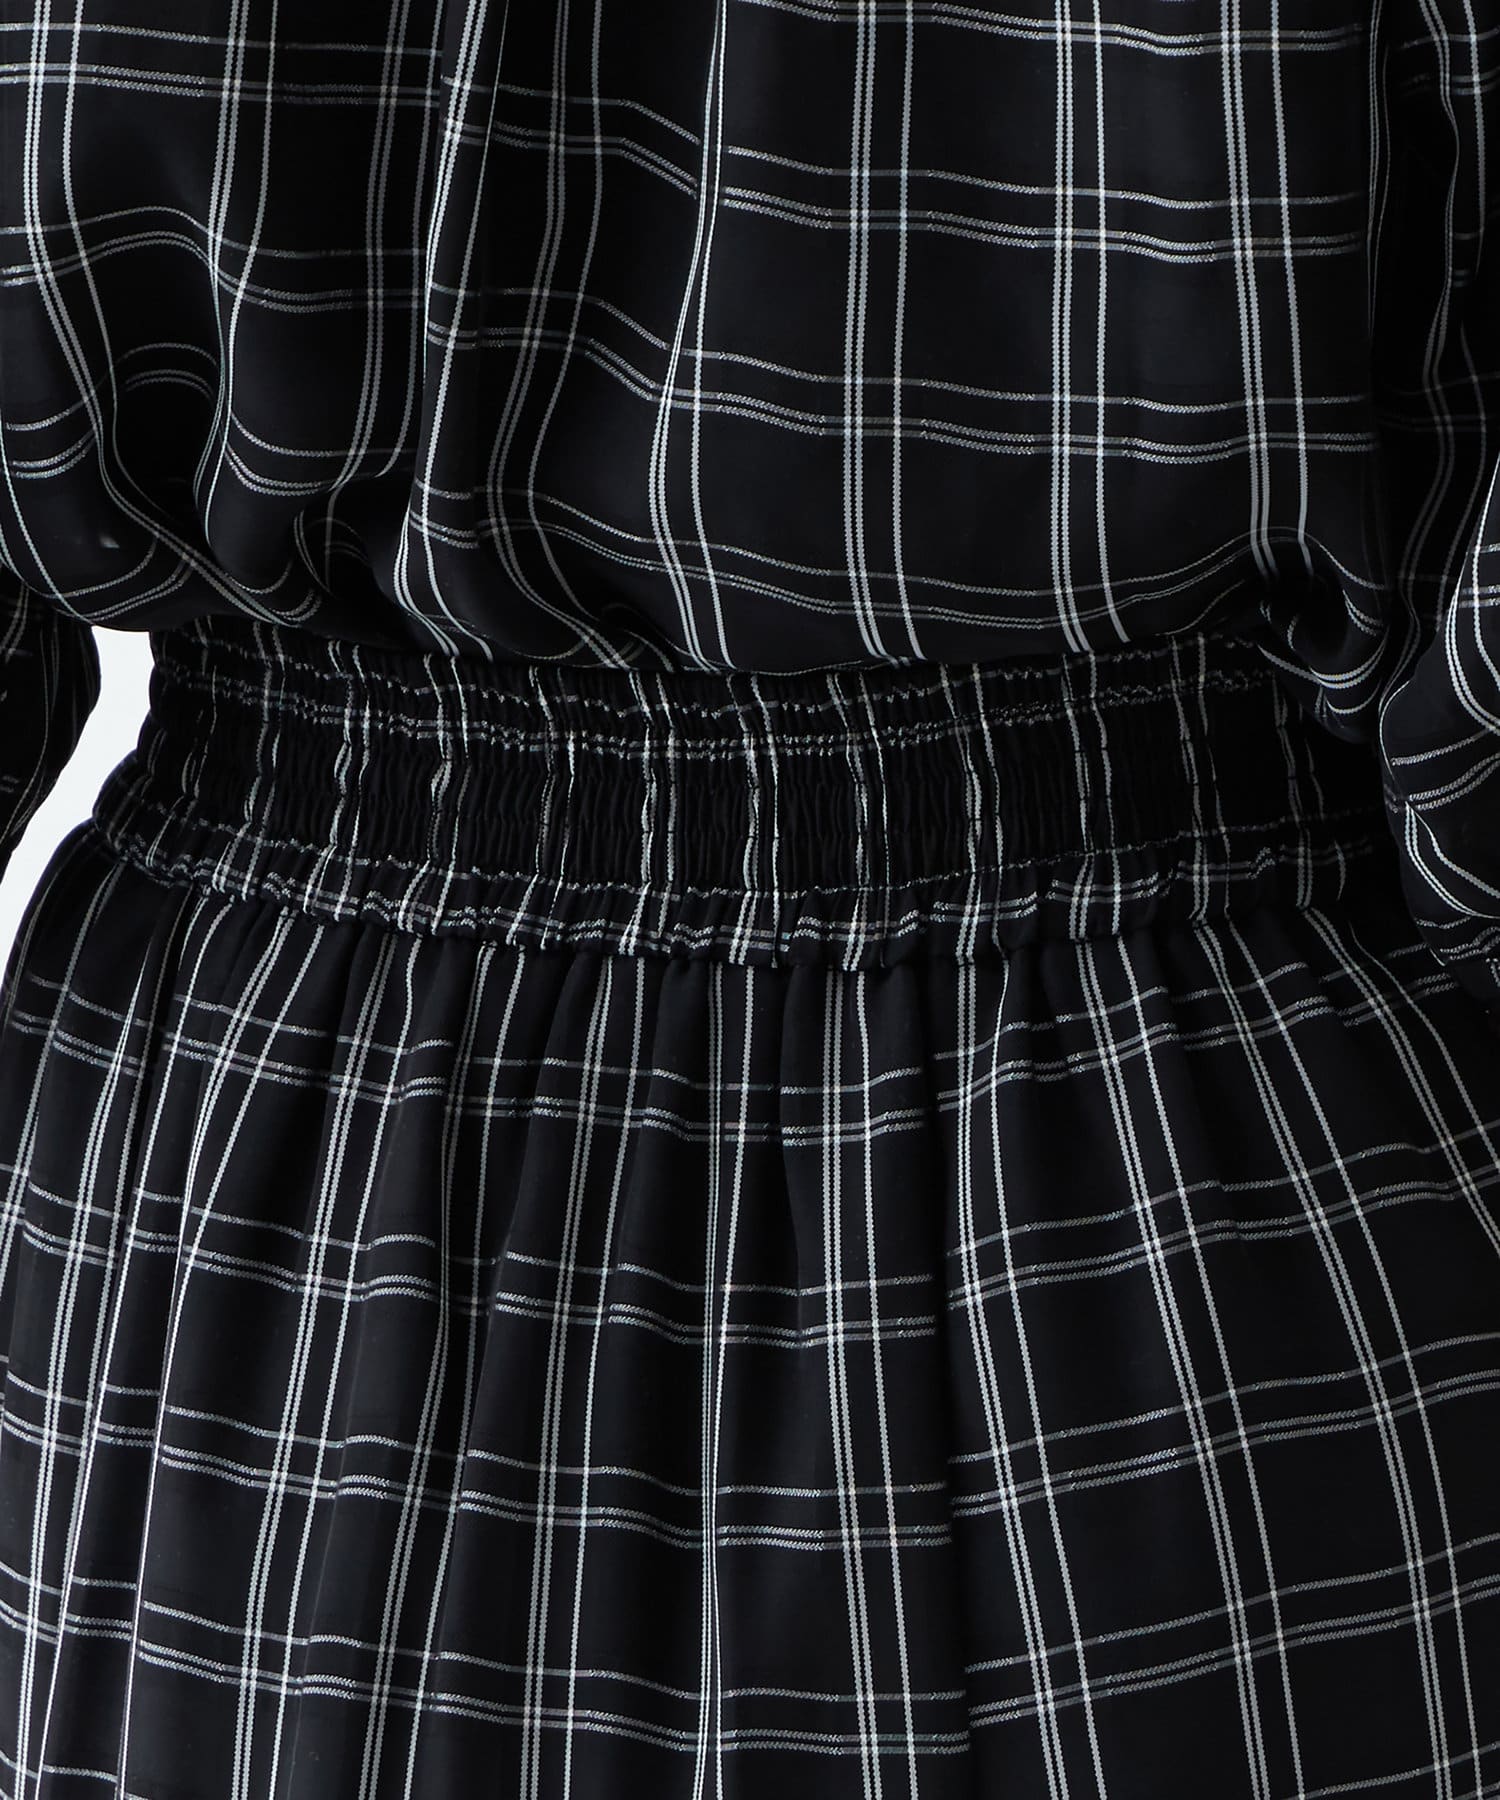 natural couture(ナチュラルクチュール) セットでワンピース風に着れるブラウス&スカート